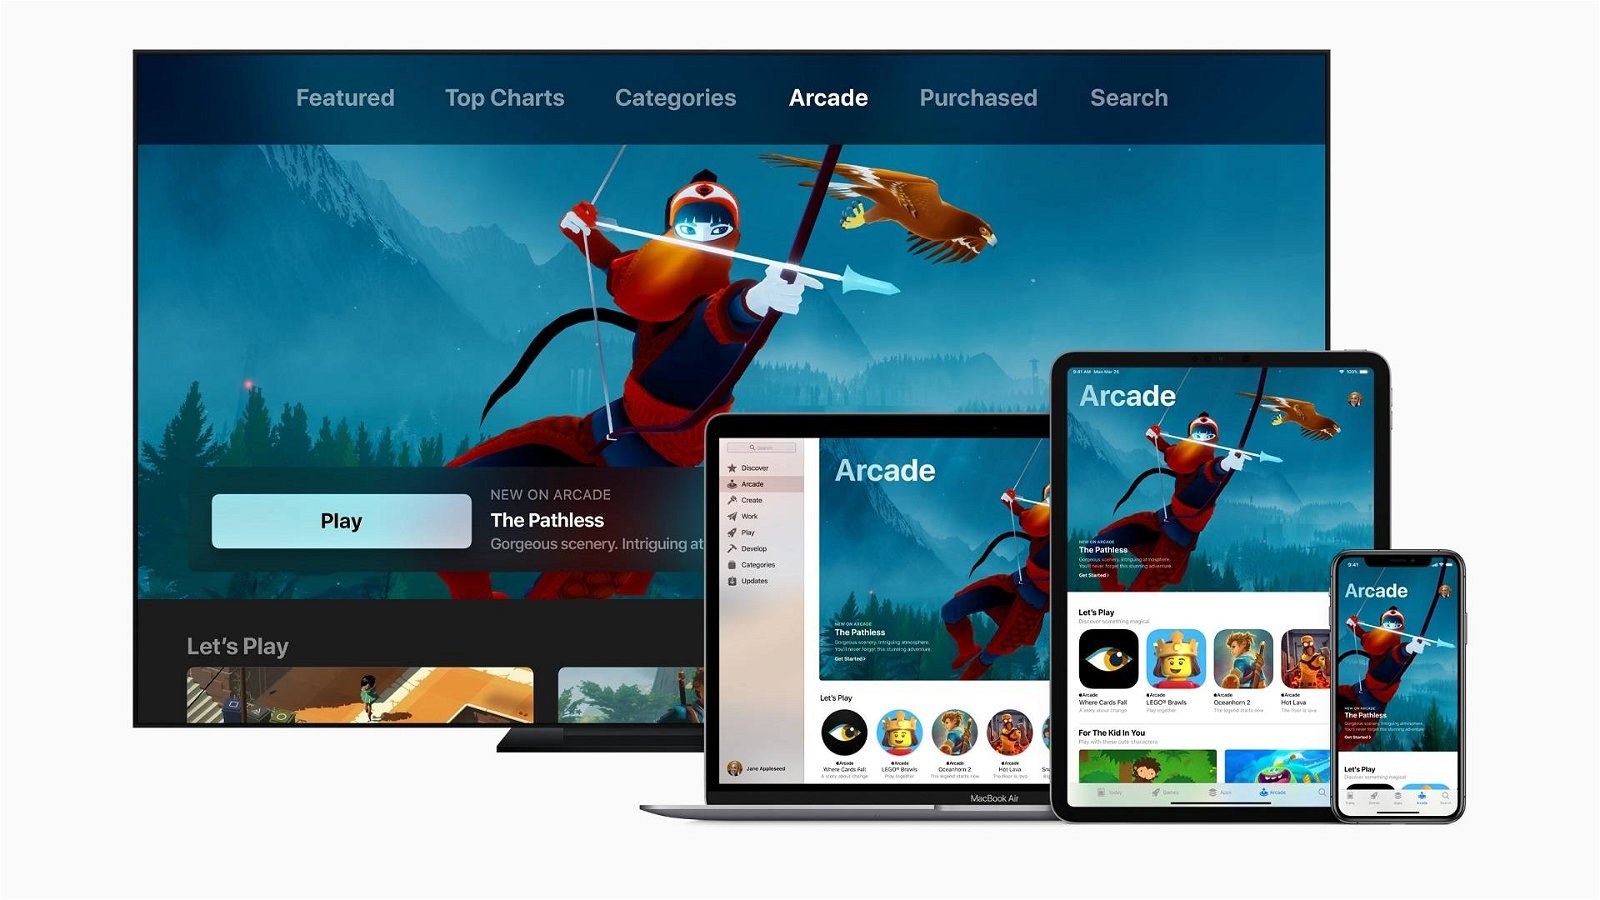 Immagine di Apple: ecco i migliori giochi e app del 2019 per iPhone, iPad e Mac